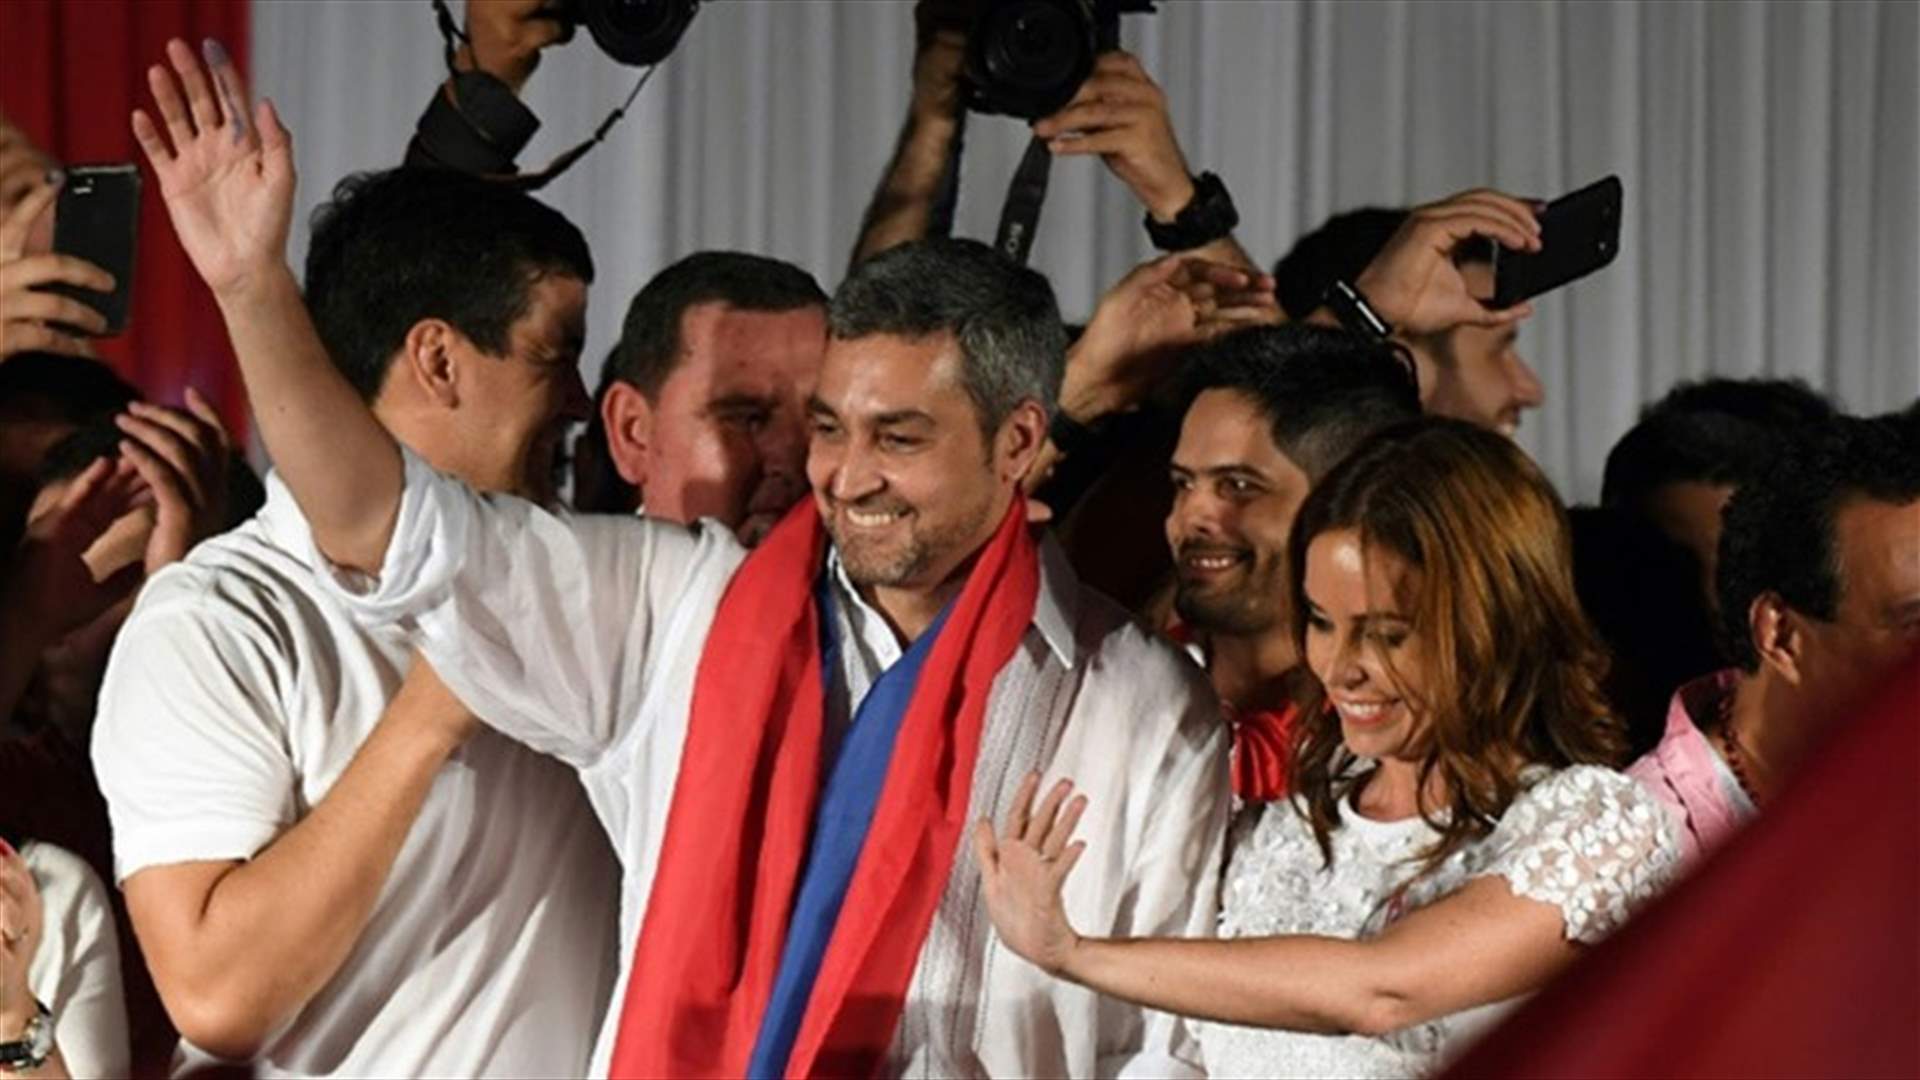 فوز اليميني ماريو بينيتيز في انتخابات الرئاسة في بارغواي